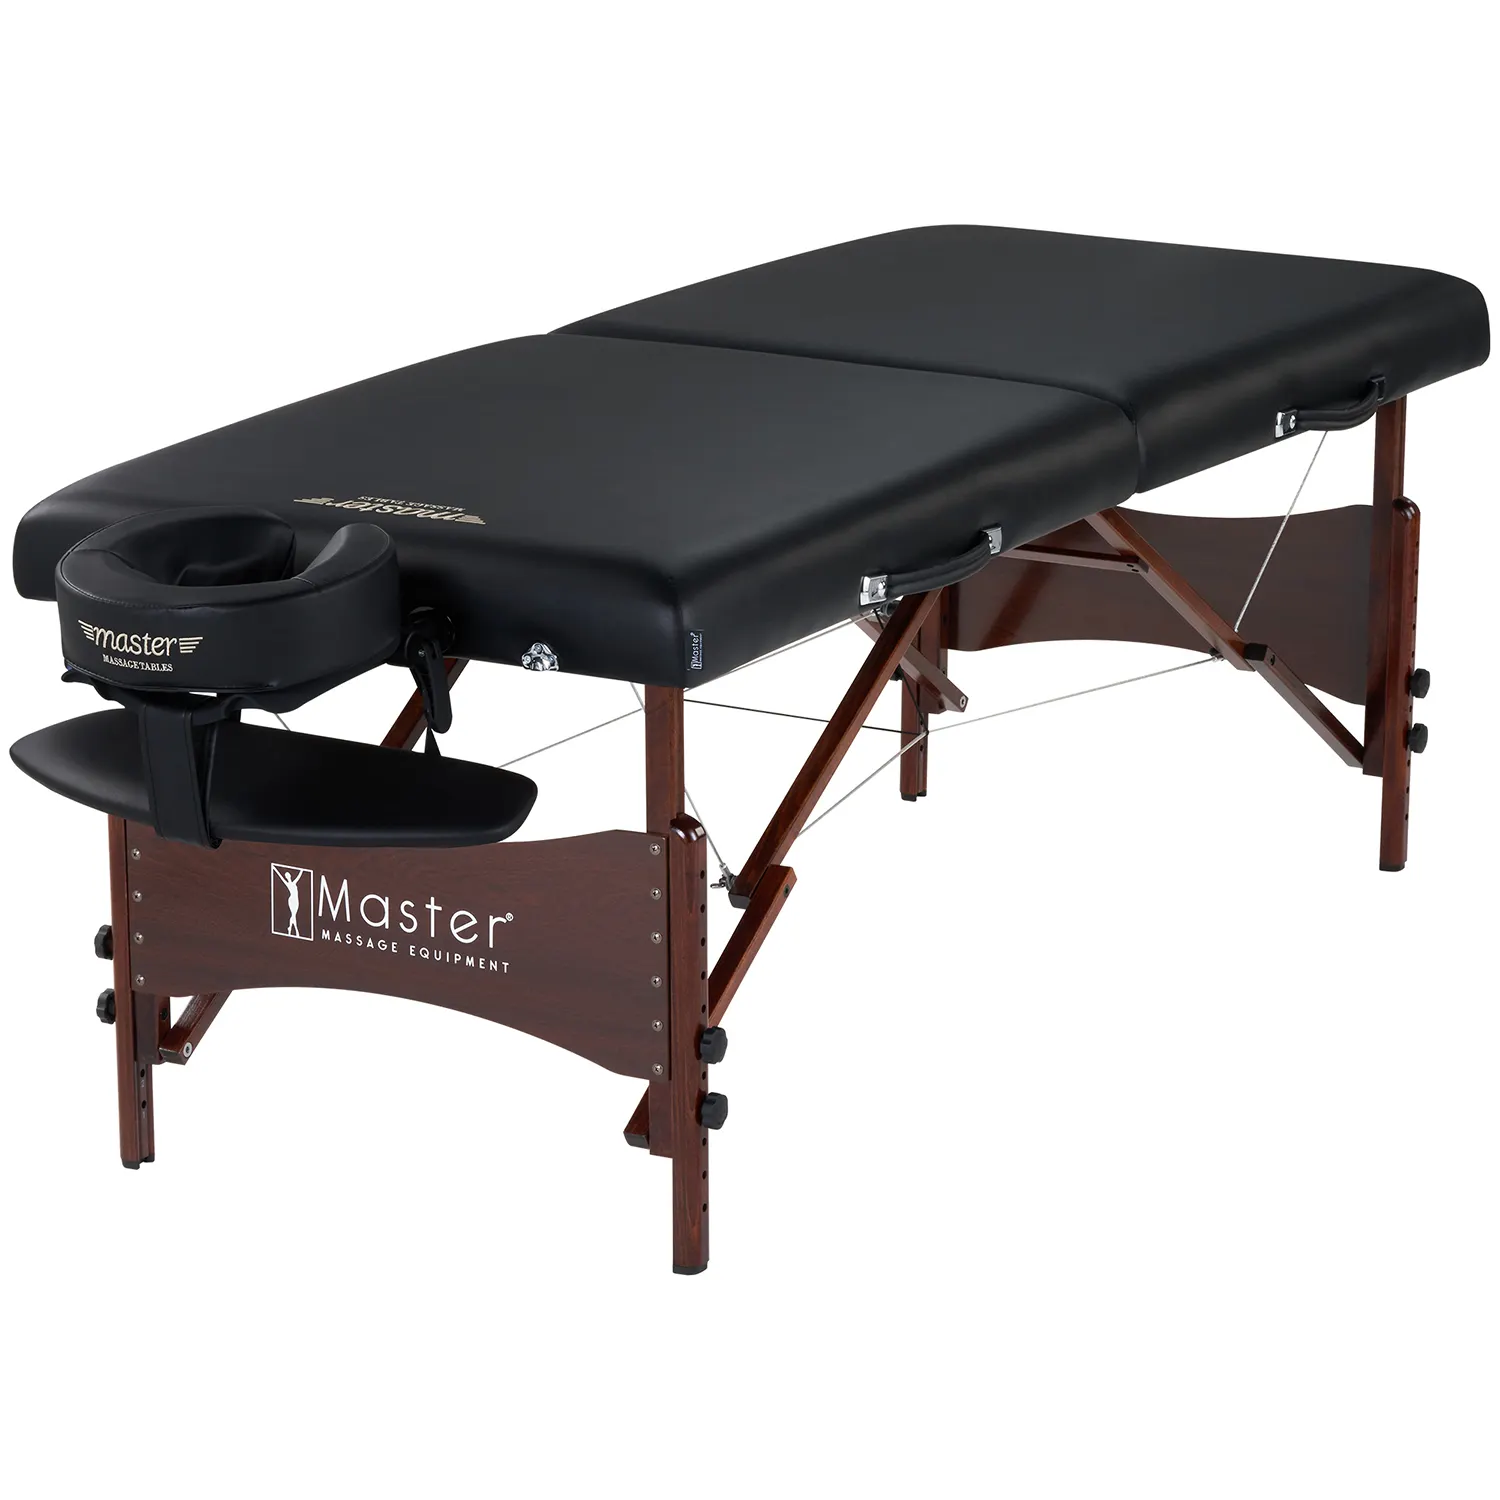 Master Massage 28 "sey nuovo Design leggero professionale pieghevole in legno portatile lettino da massaggio lettino per il viso